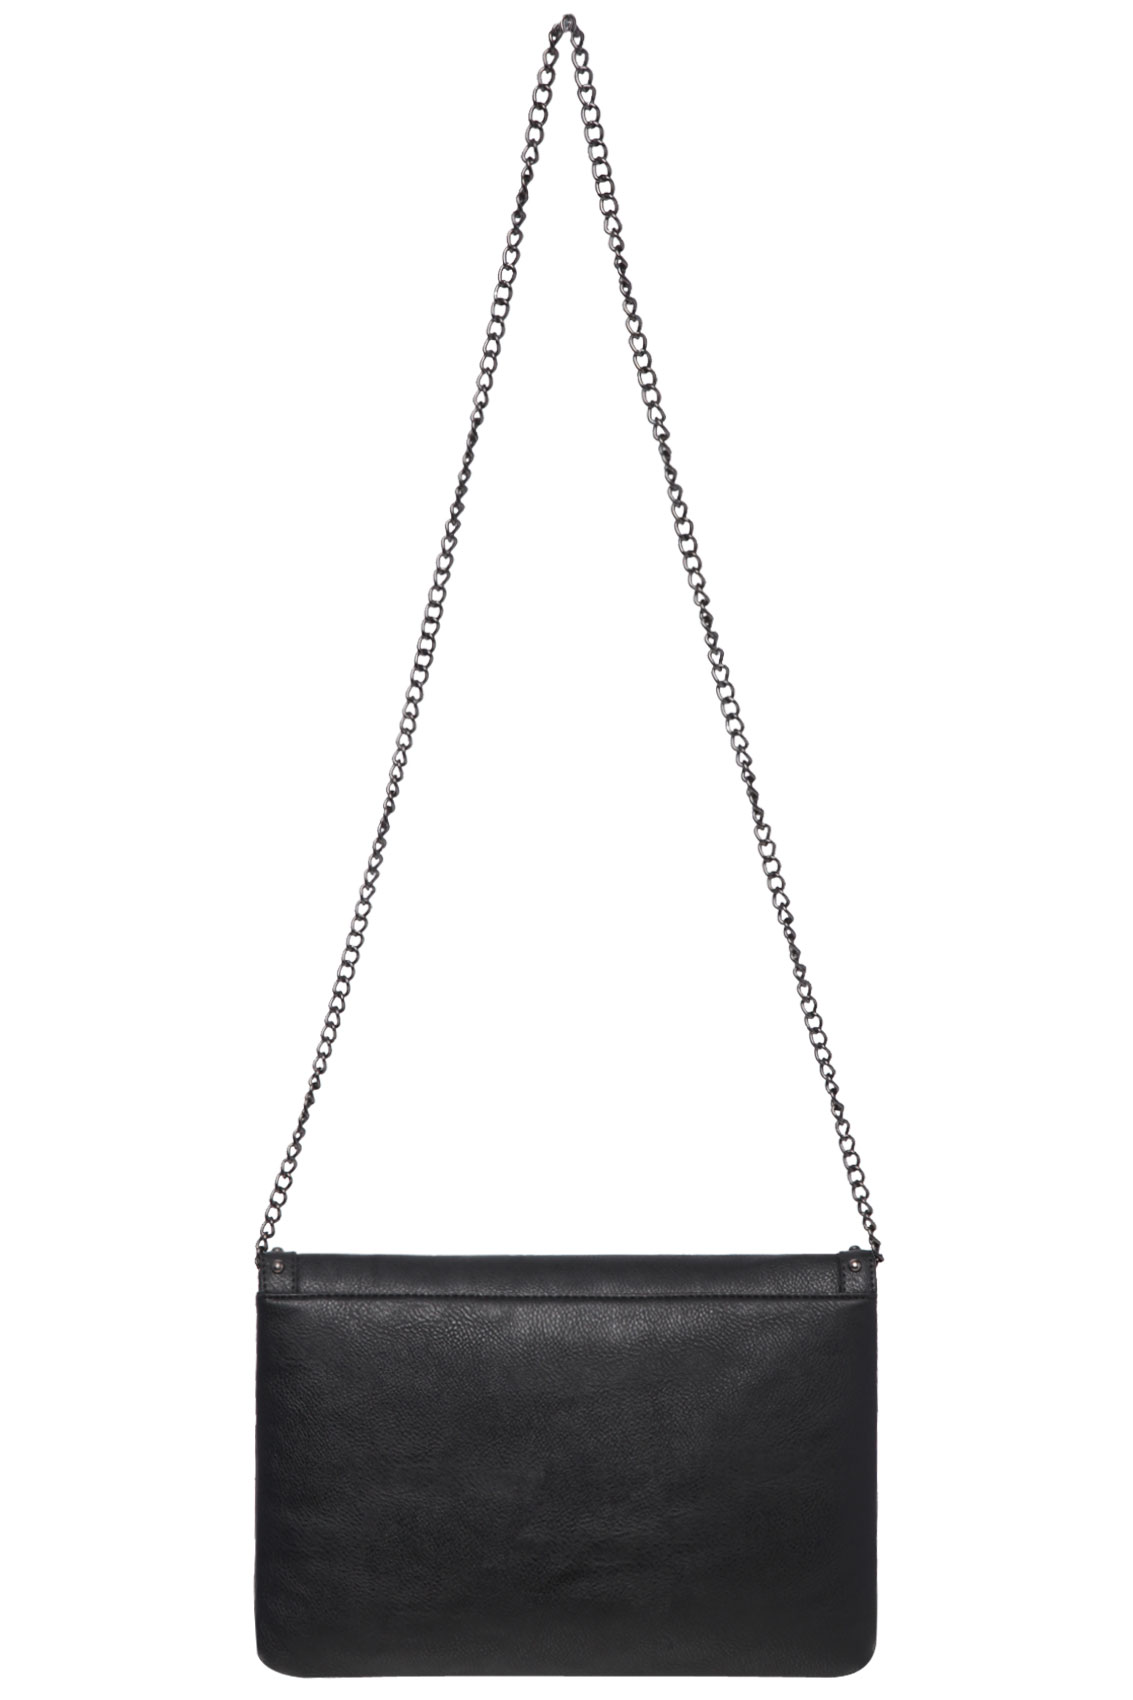 Black Studded Envelope Clutch Bag With Chain Shoulder Strap